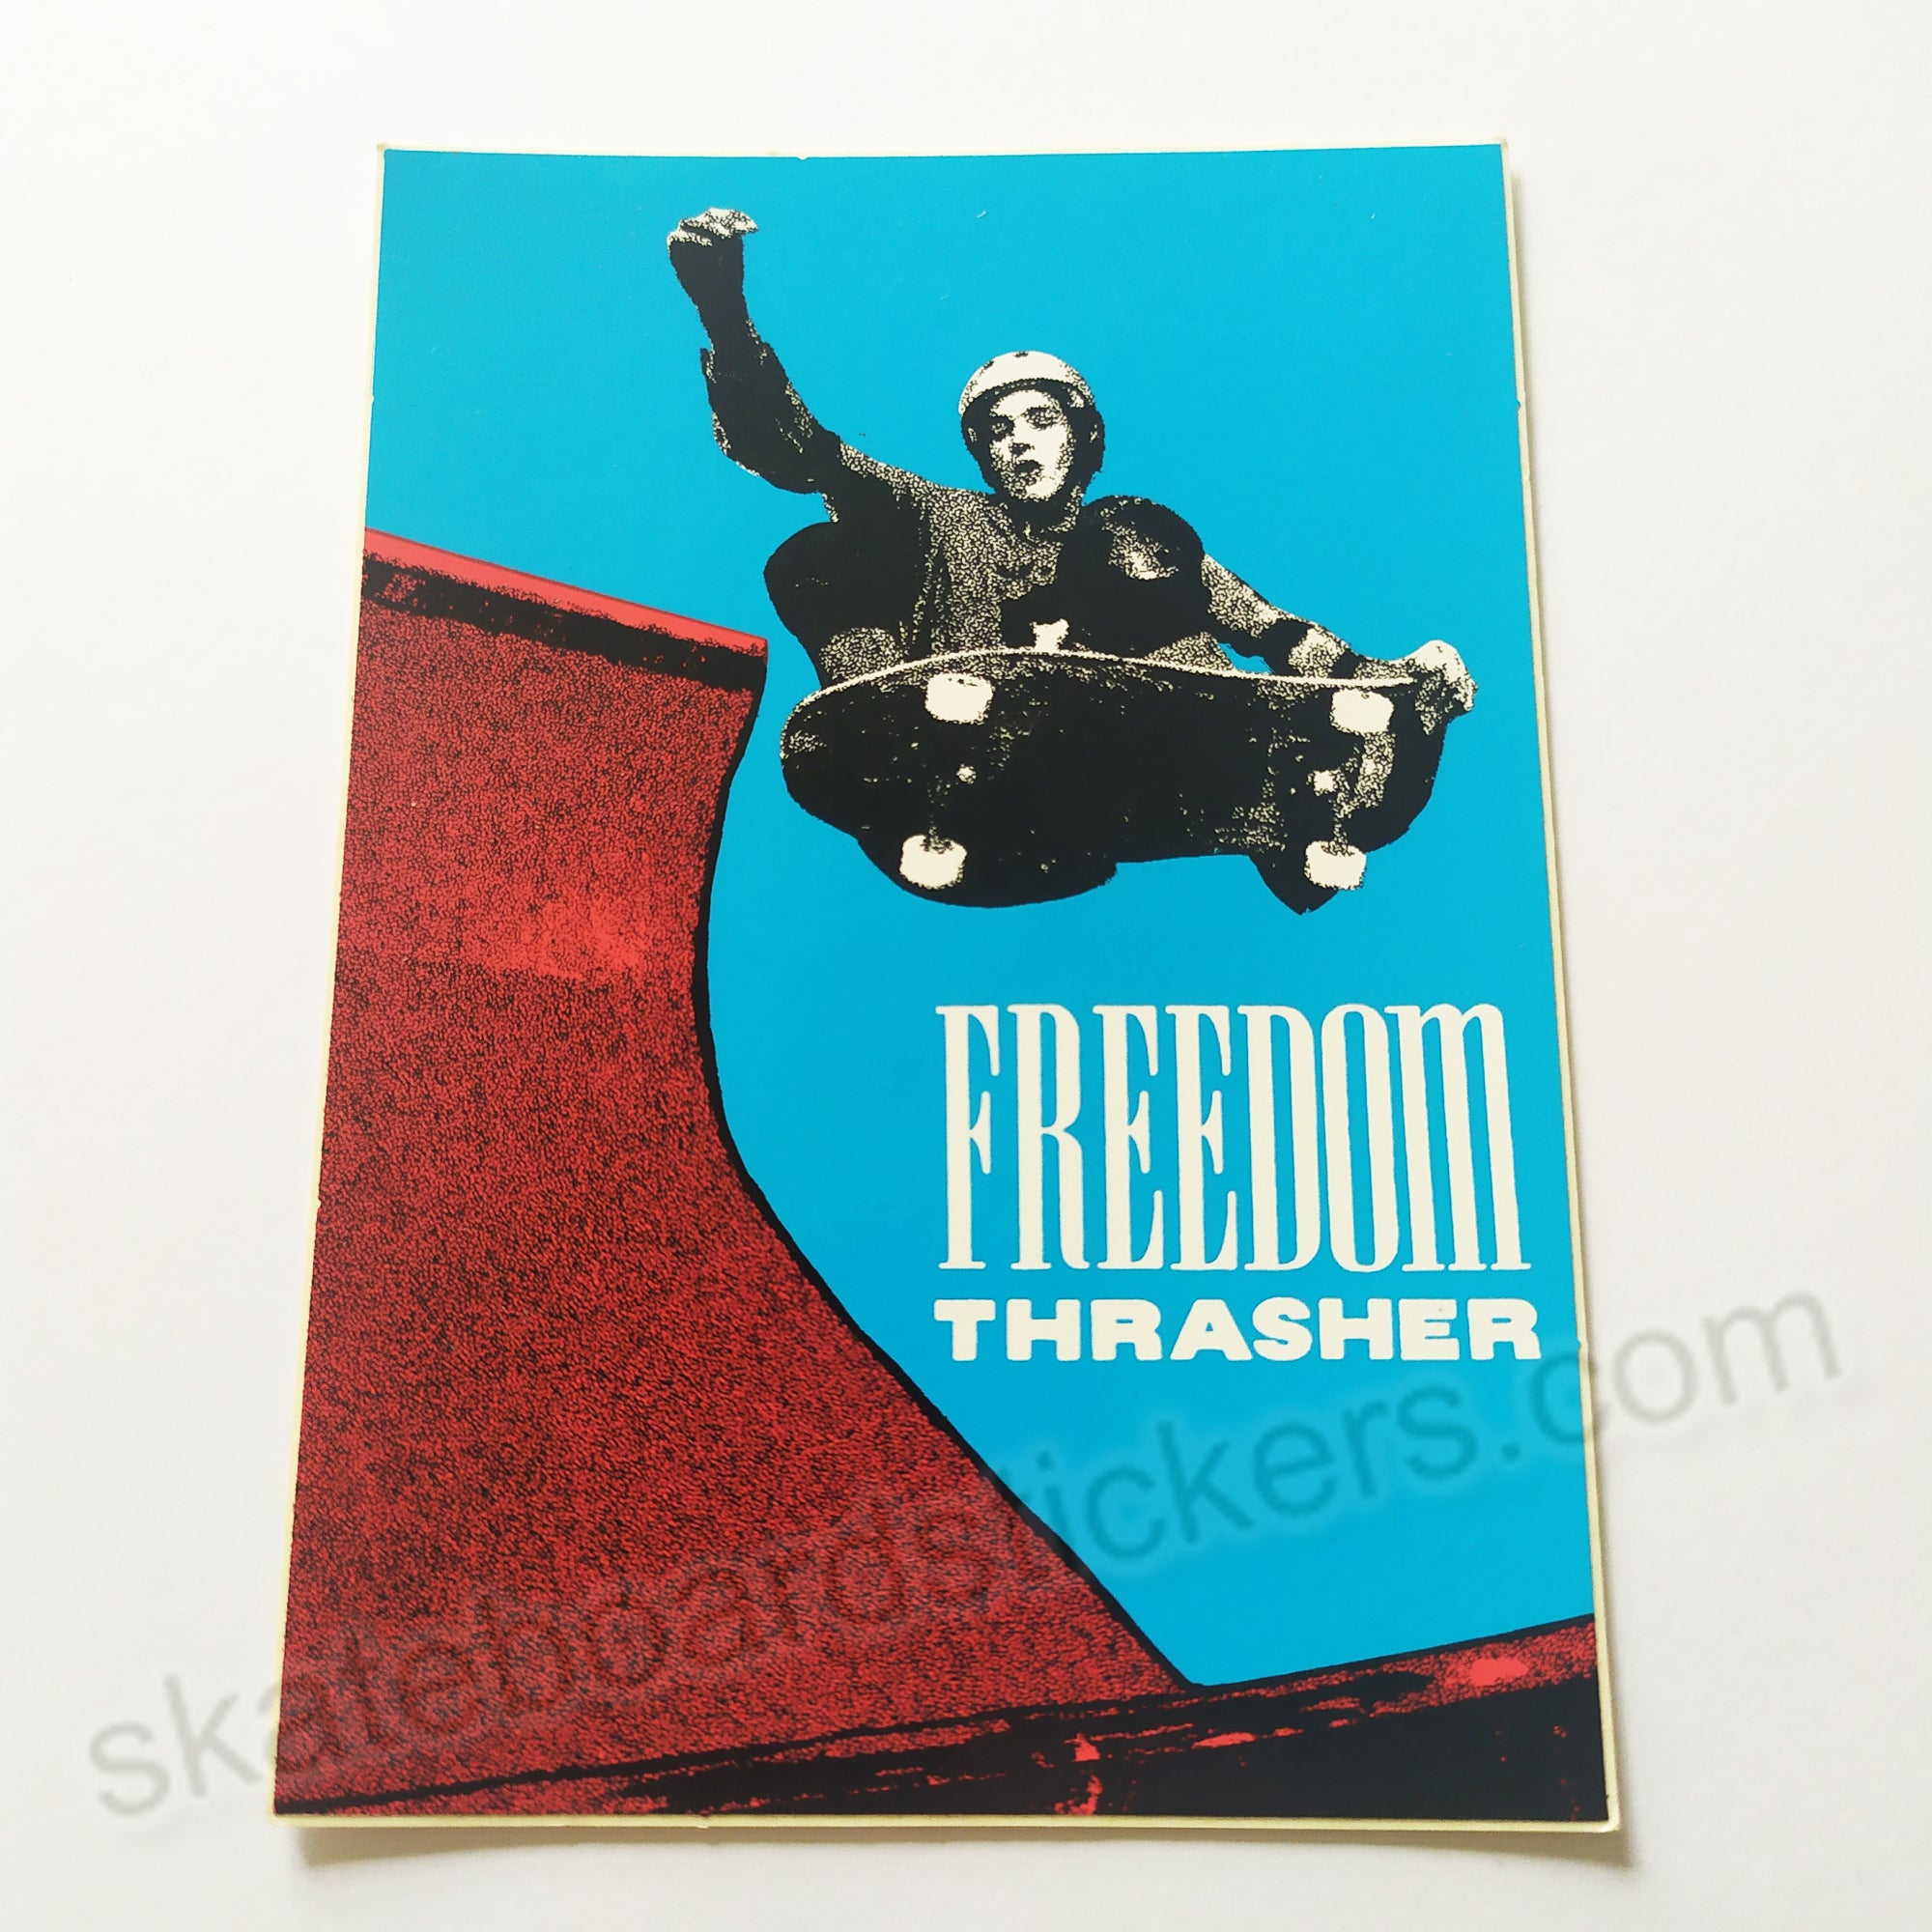 Thrasher Magazine "Freedom Thrasher" Old School Skateboard Sticker